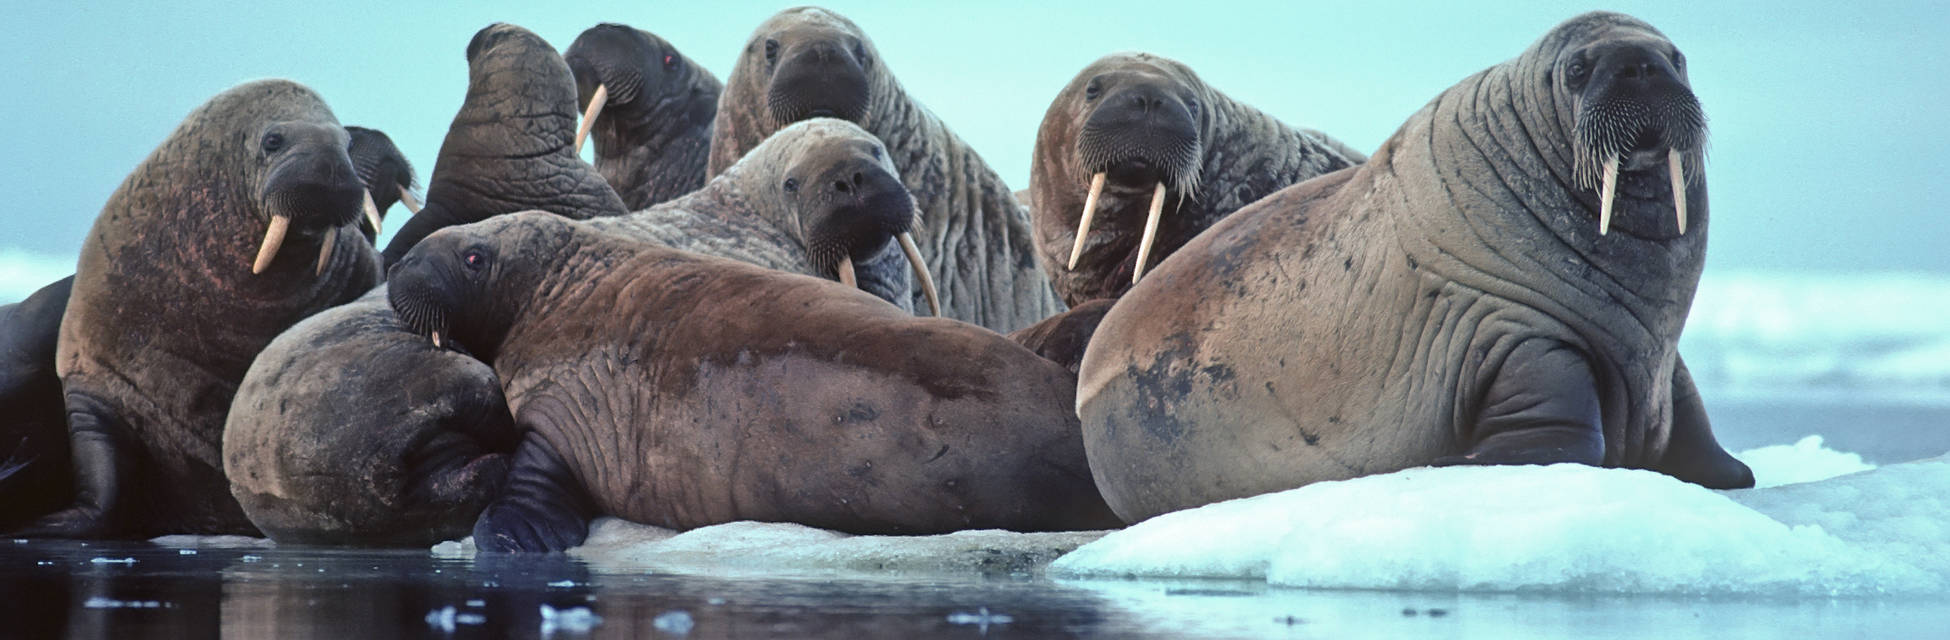 spitsbergen-walrus-fotolia_11757390_xl.jpg_2